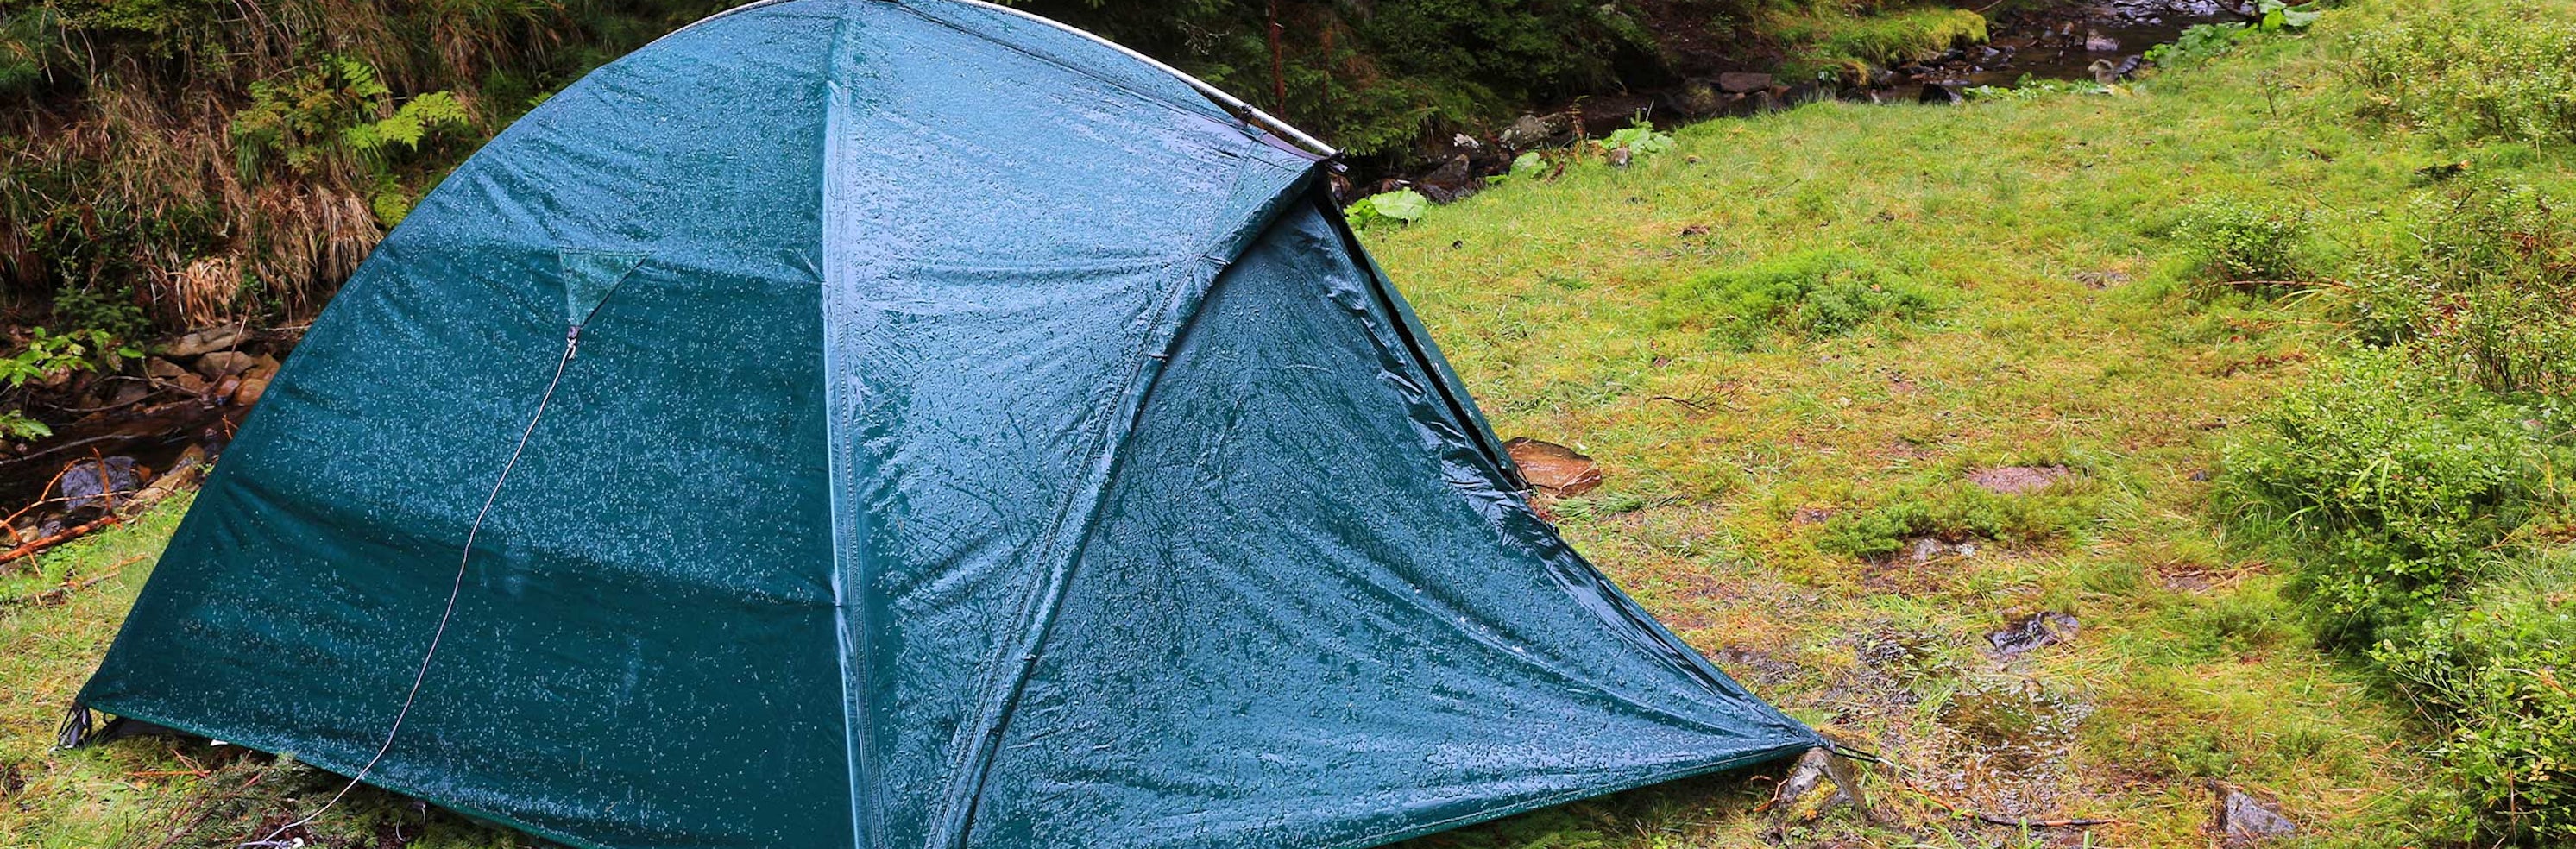 Ælte Fil Velsigne Få styr på vandsøjletryk i telte | Læs mere på Bilka.dk